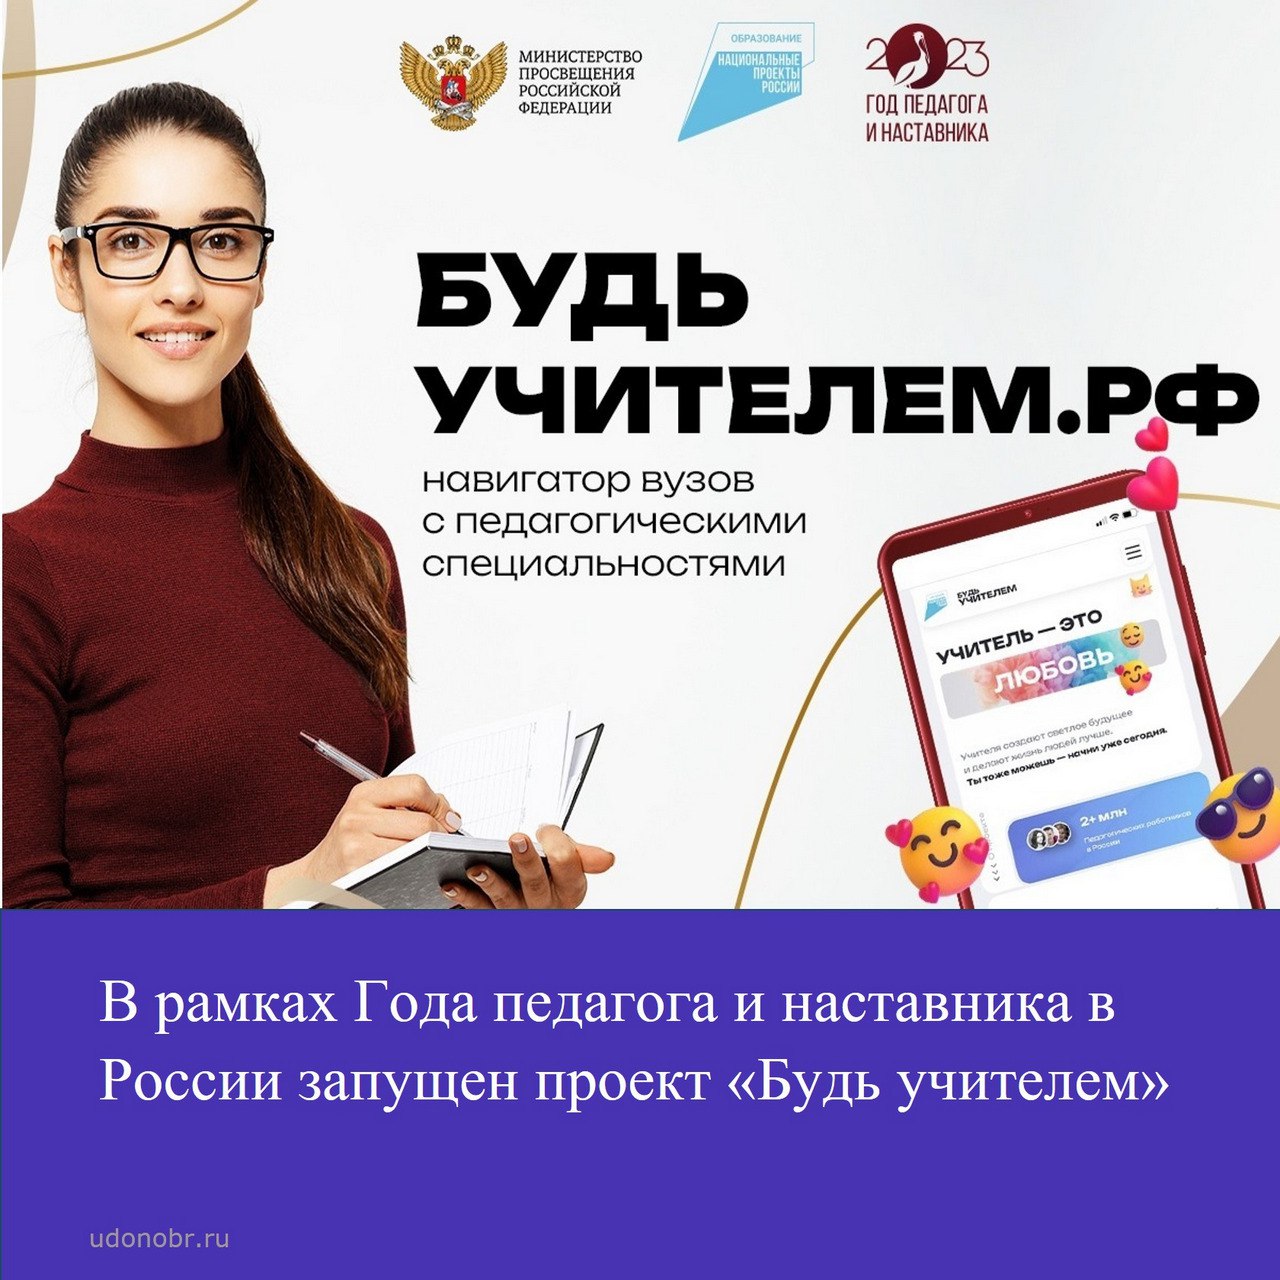 В рамках Года педагога и наставника в России запущен проект «Будь учителем»